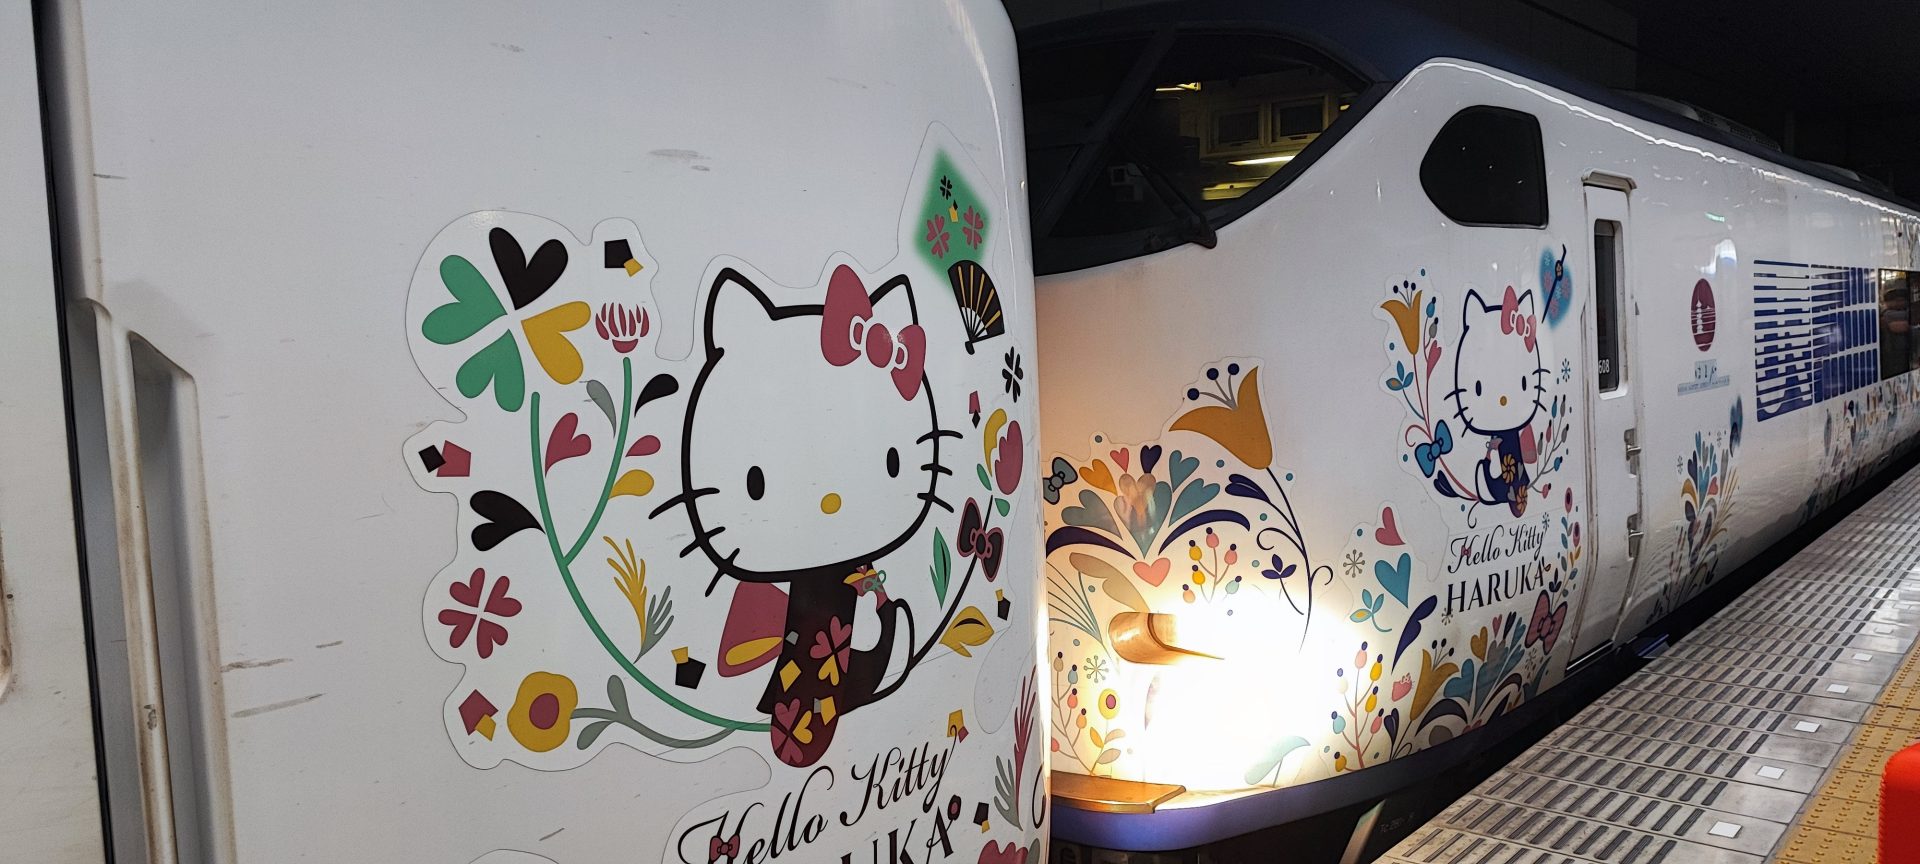 Hello Kitty Haruka Express